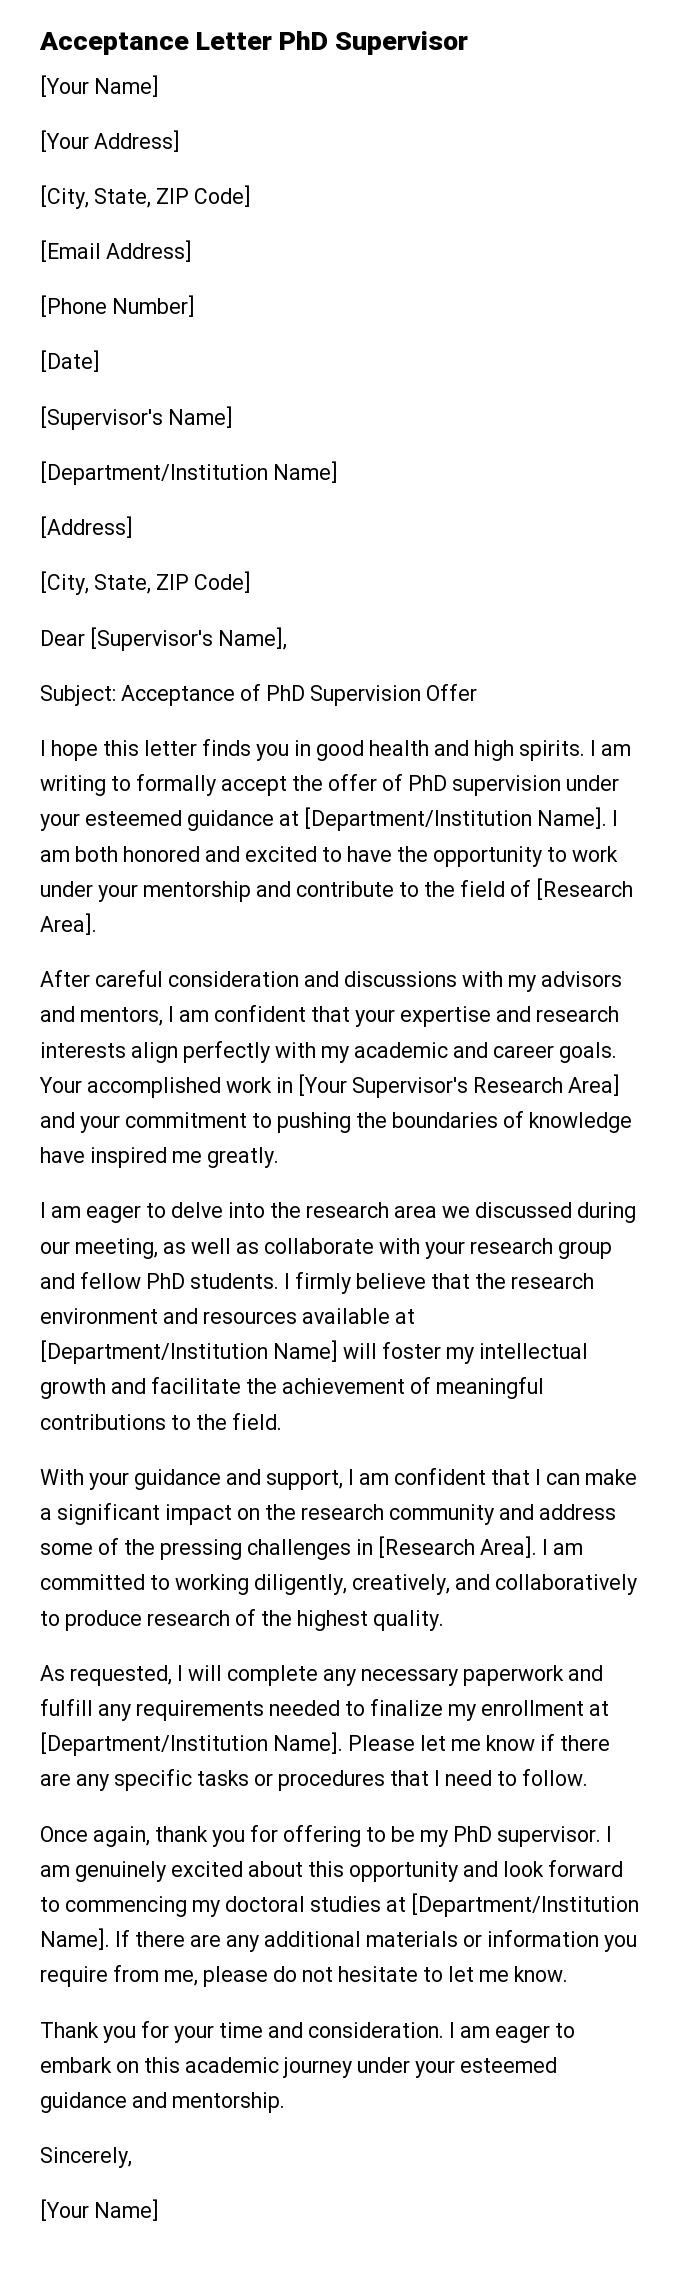 Acceptance Letter PhD Supervisor